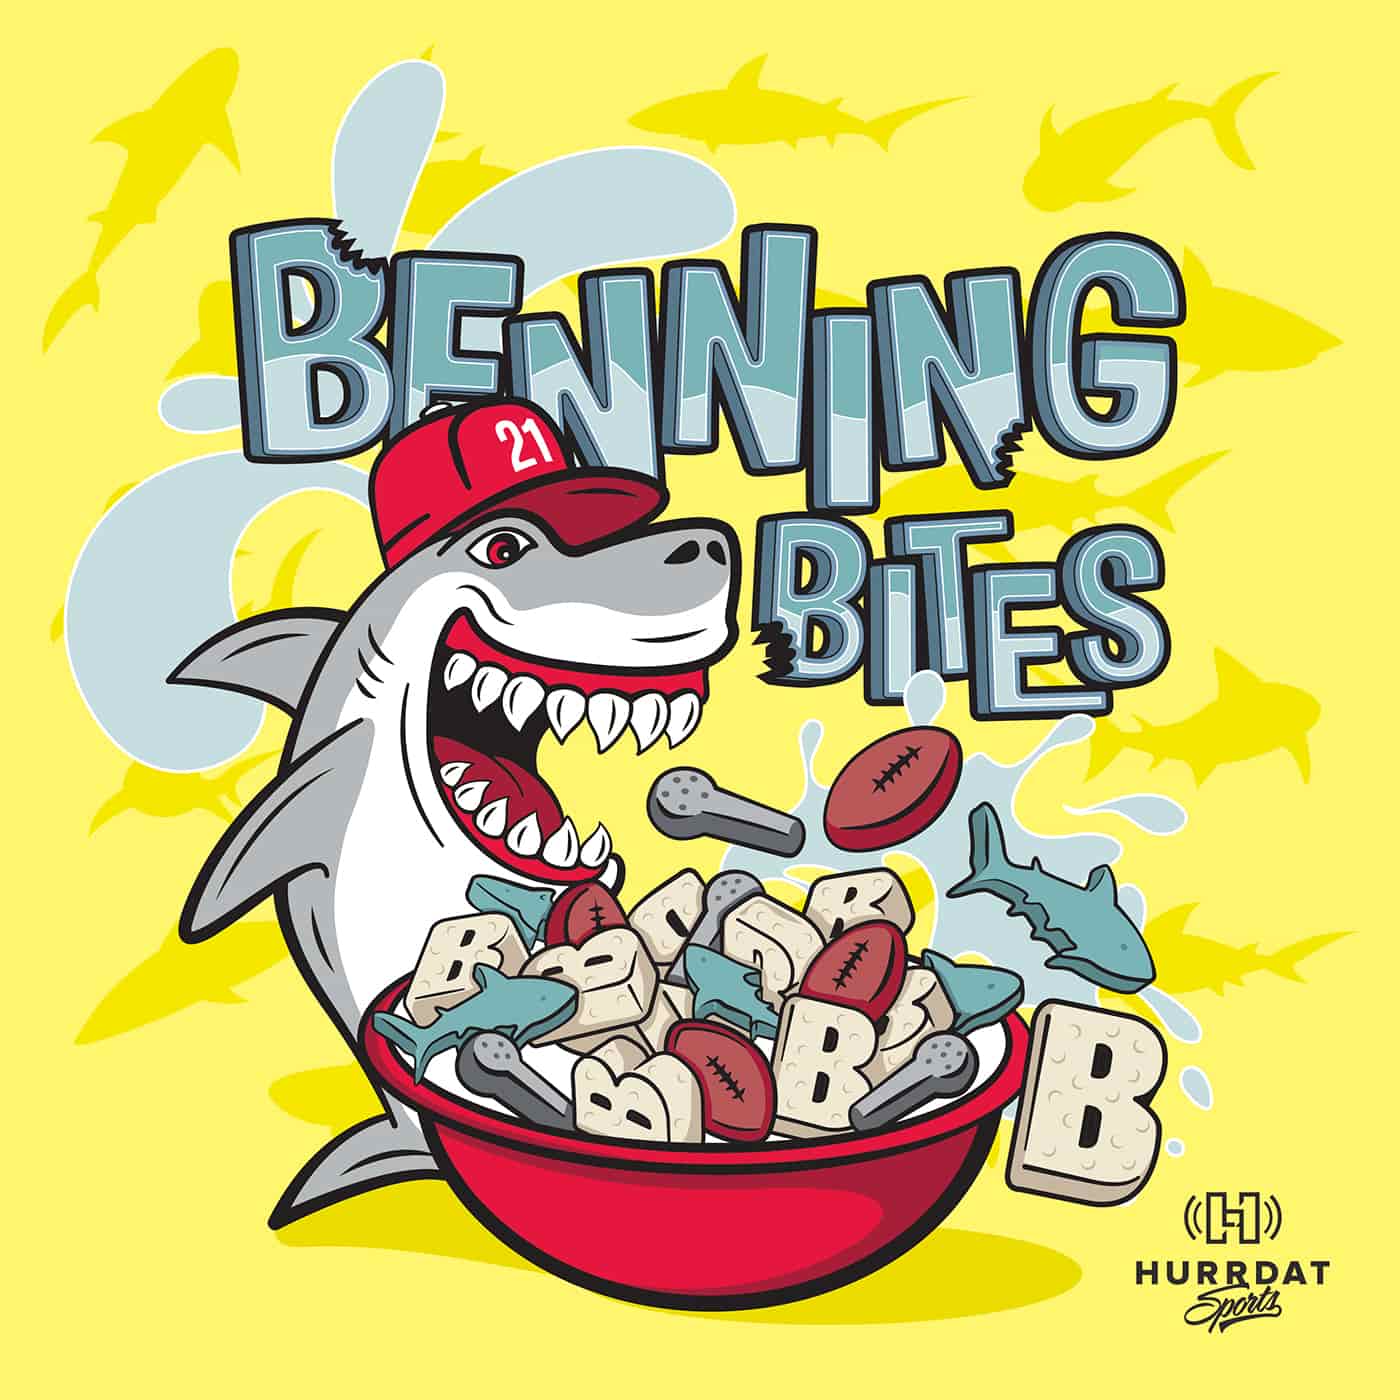 Benning Bites